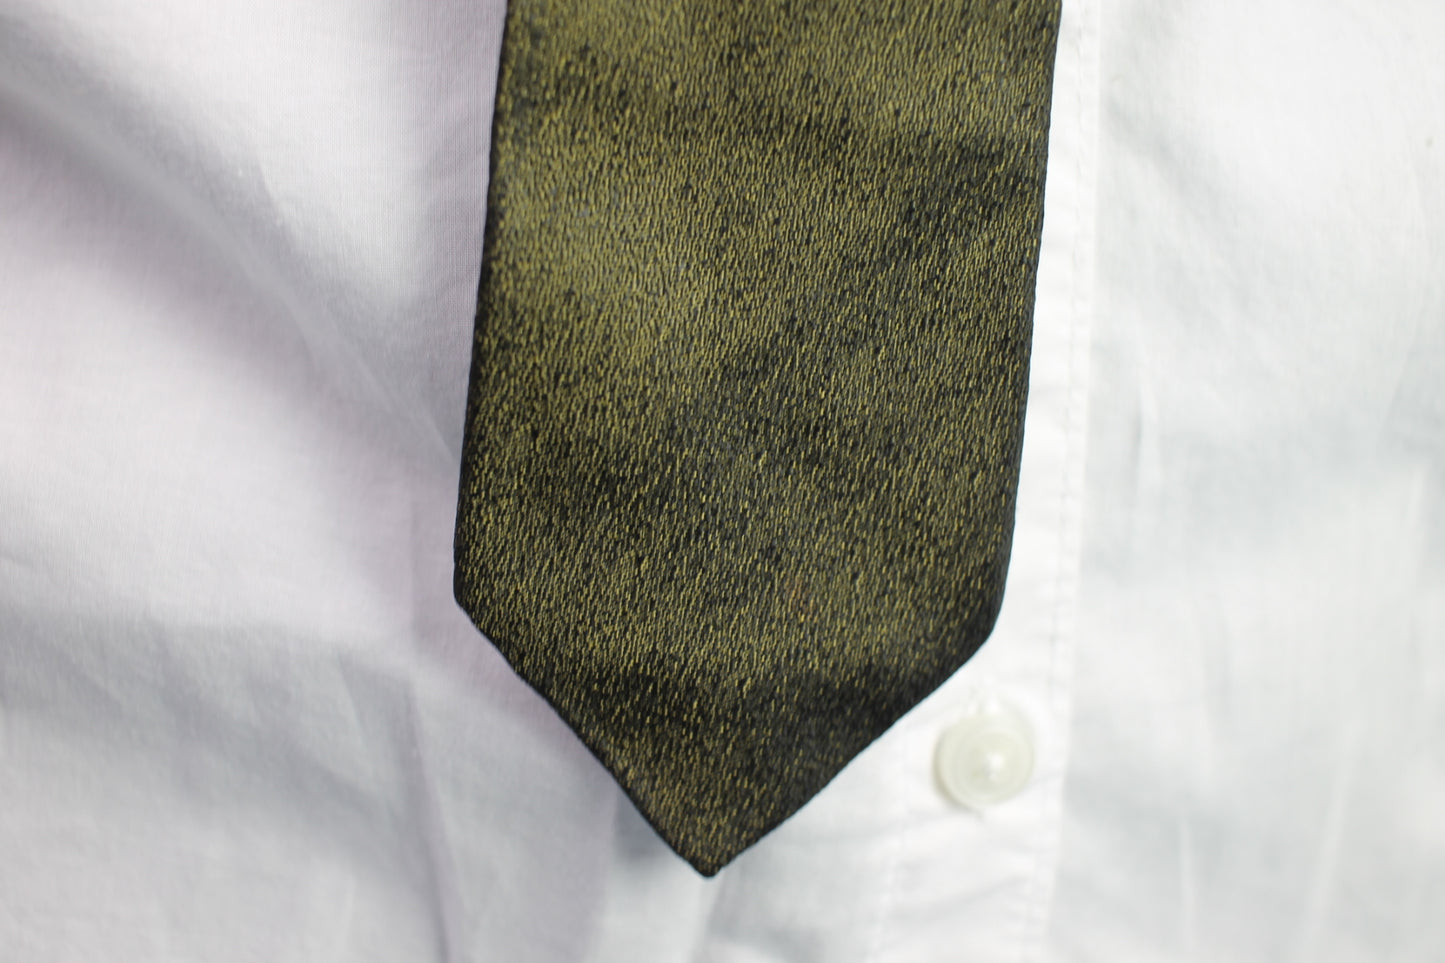 Vintage gold black flecked metallic look motif pattern skinny tie